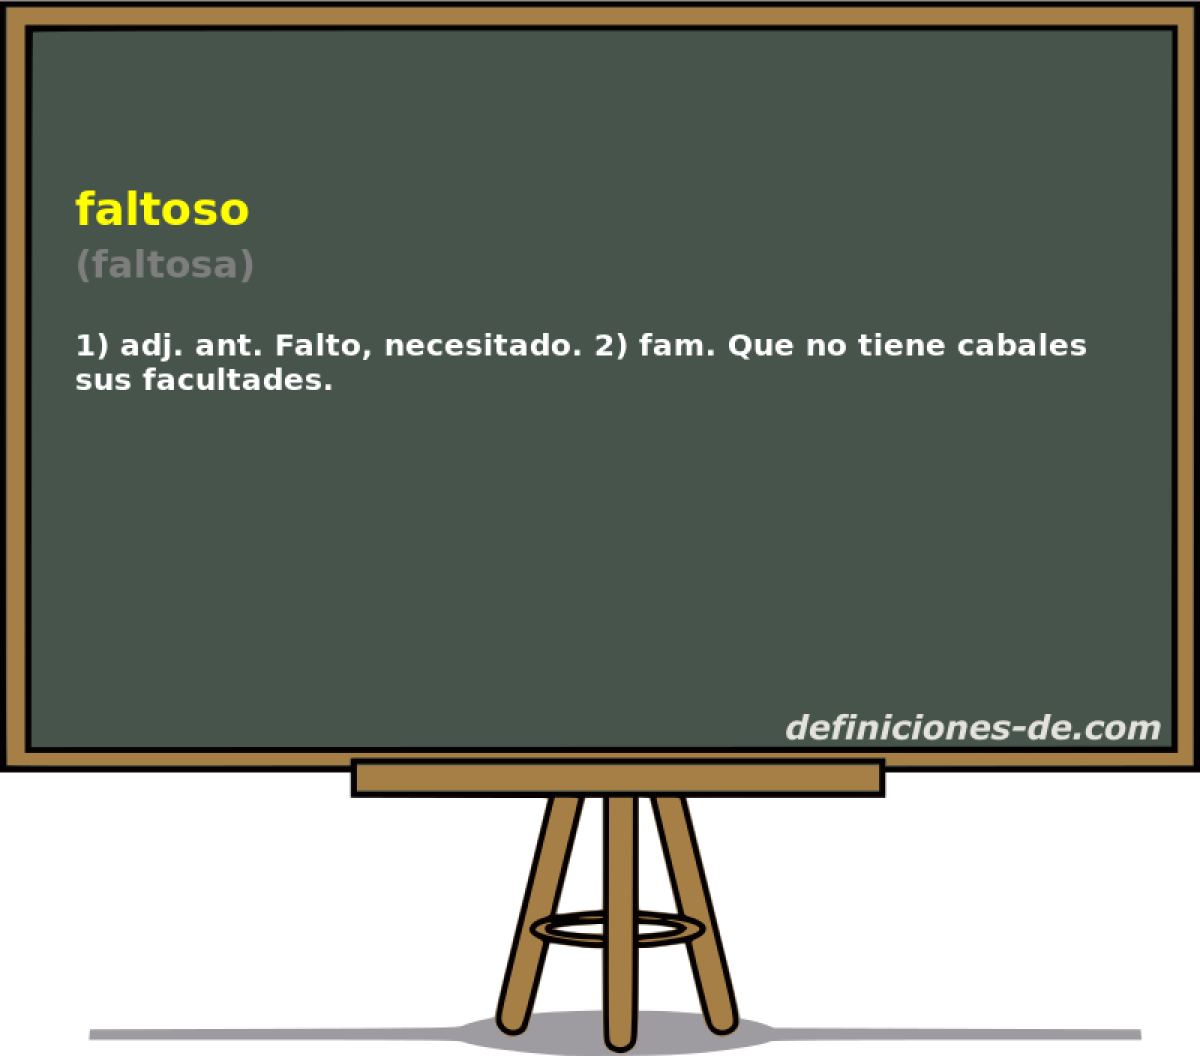 faltoso (faltosa)